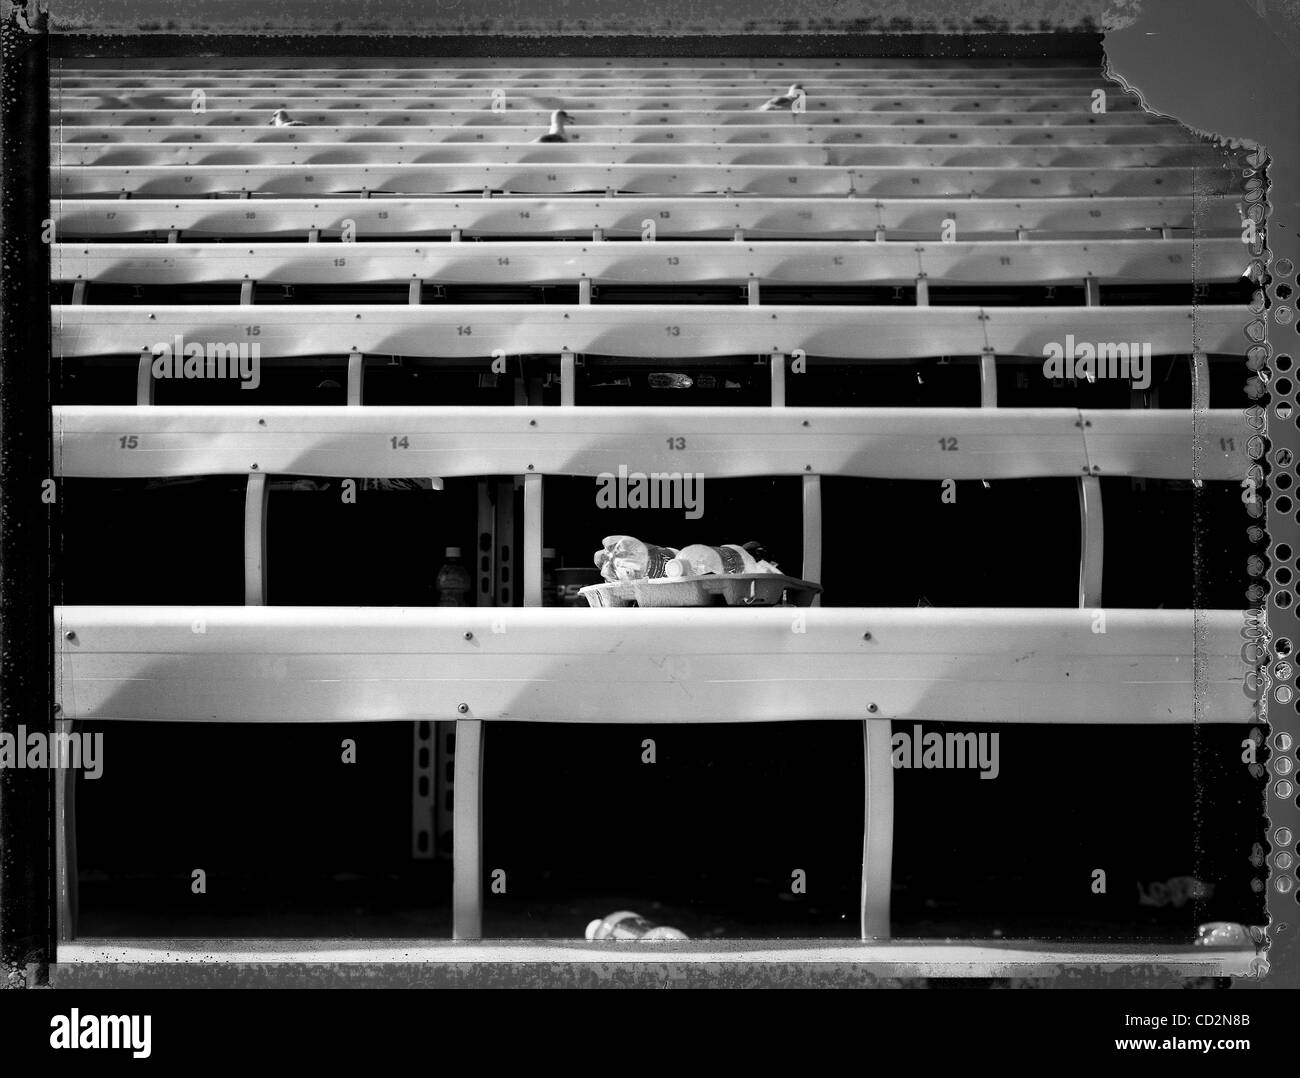 SP 284447 te raggi 3 didascalia: (03/14/2008 San Pietroburgo) dopo un raggi v. Toronto Blue Jays match, gabbiani hanno sostituito ventole in gabbie come essi per il recupero degli scarti di ciò che è stato lasciato alle spalle. EDMUND D. FONTANA | Orari Foto Sommario: fotografie di Al campo Lang, il Tampa Bay Rays e t Foto Stock